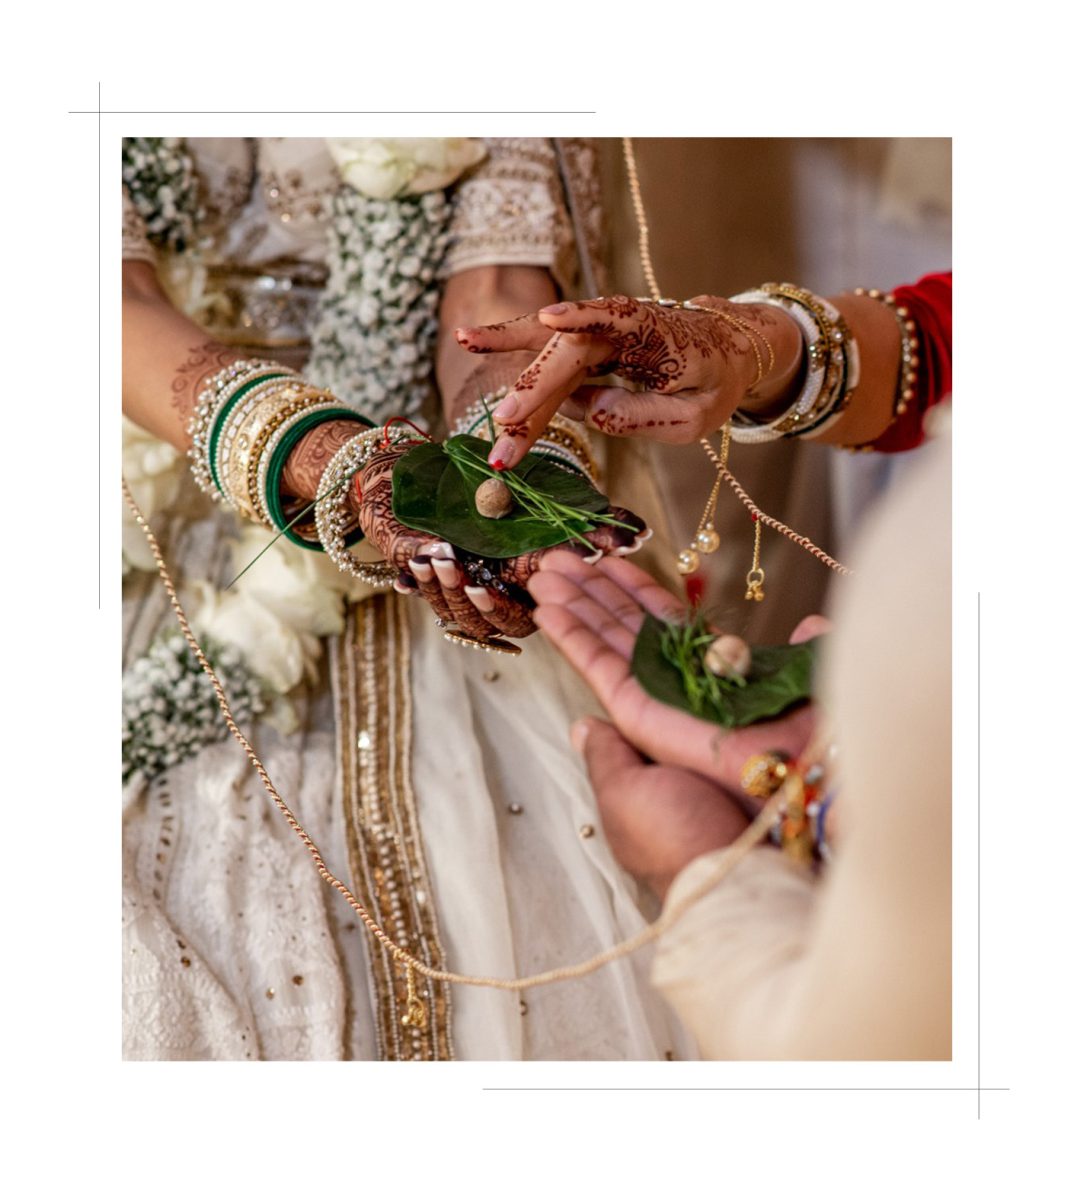 Hindu wedding rituals with the synchronised hindu wedding music by Shiv Gopal